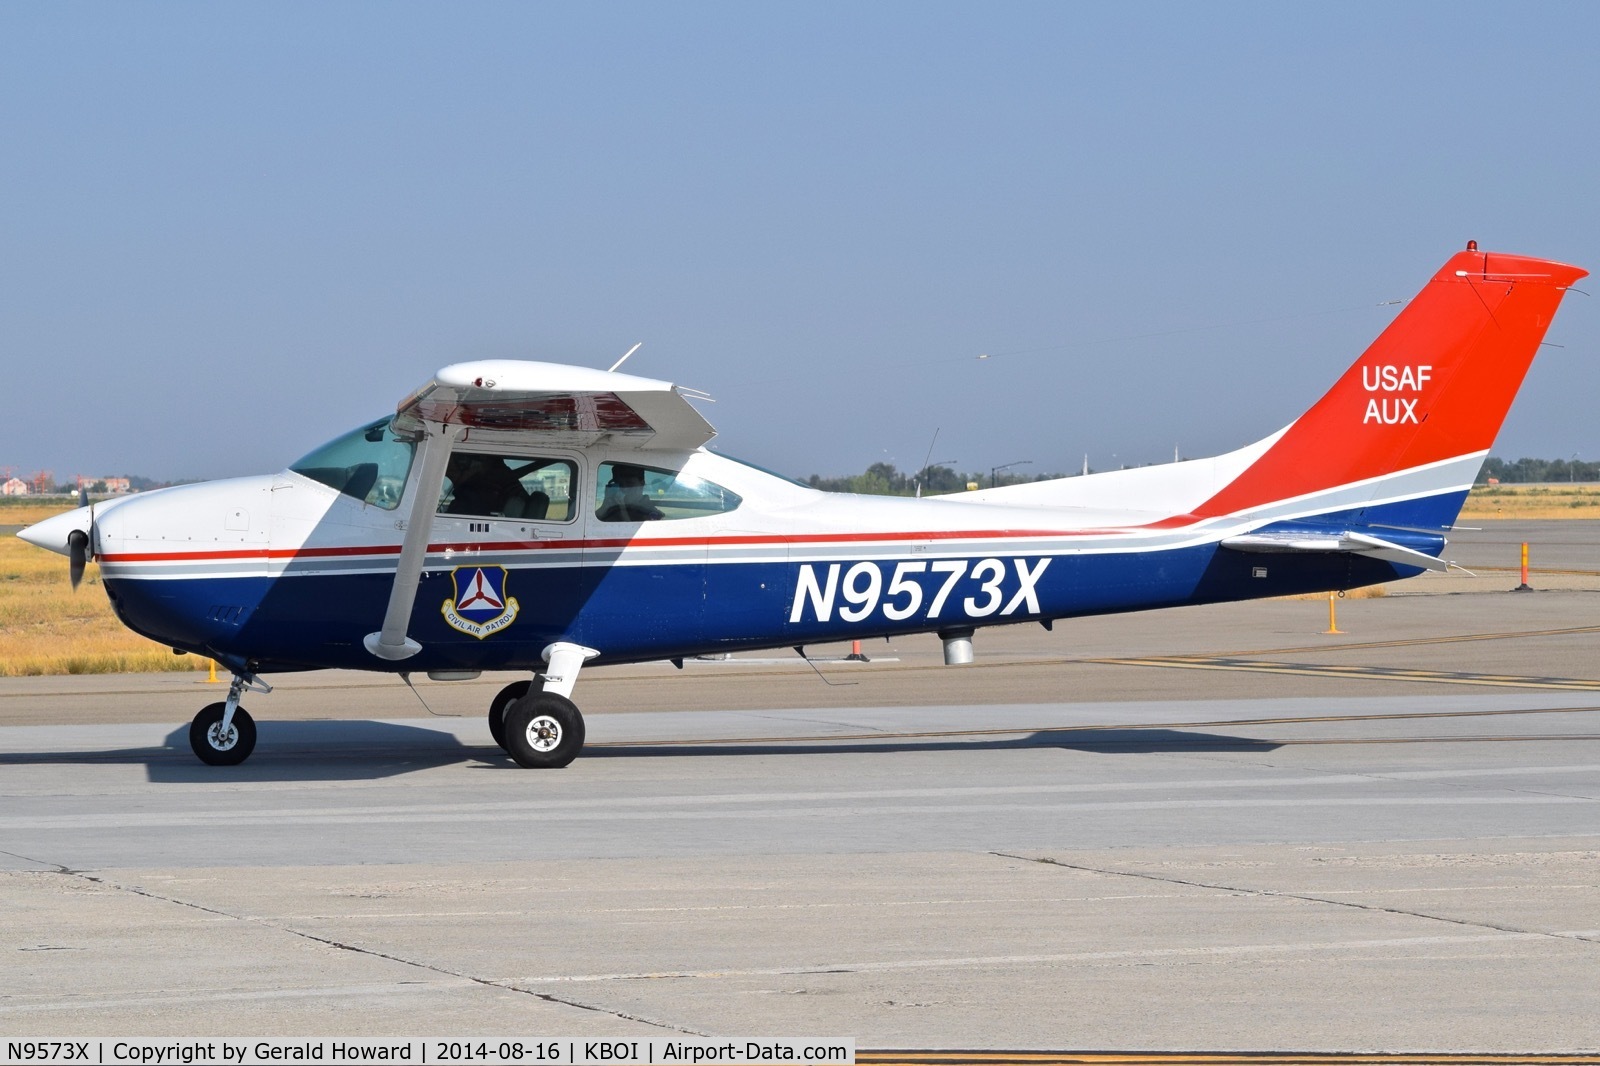 N9573X, 1986 Cessna 182R Skylane C/N 18268558, Civil Air patrol aircraft out of Mountain Home, ID.